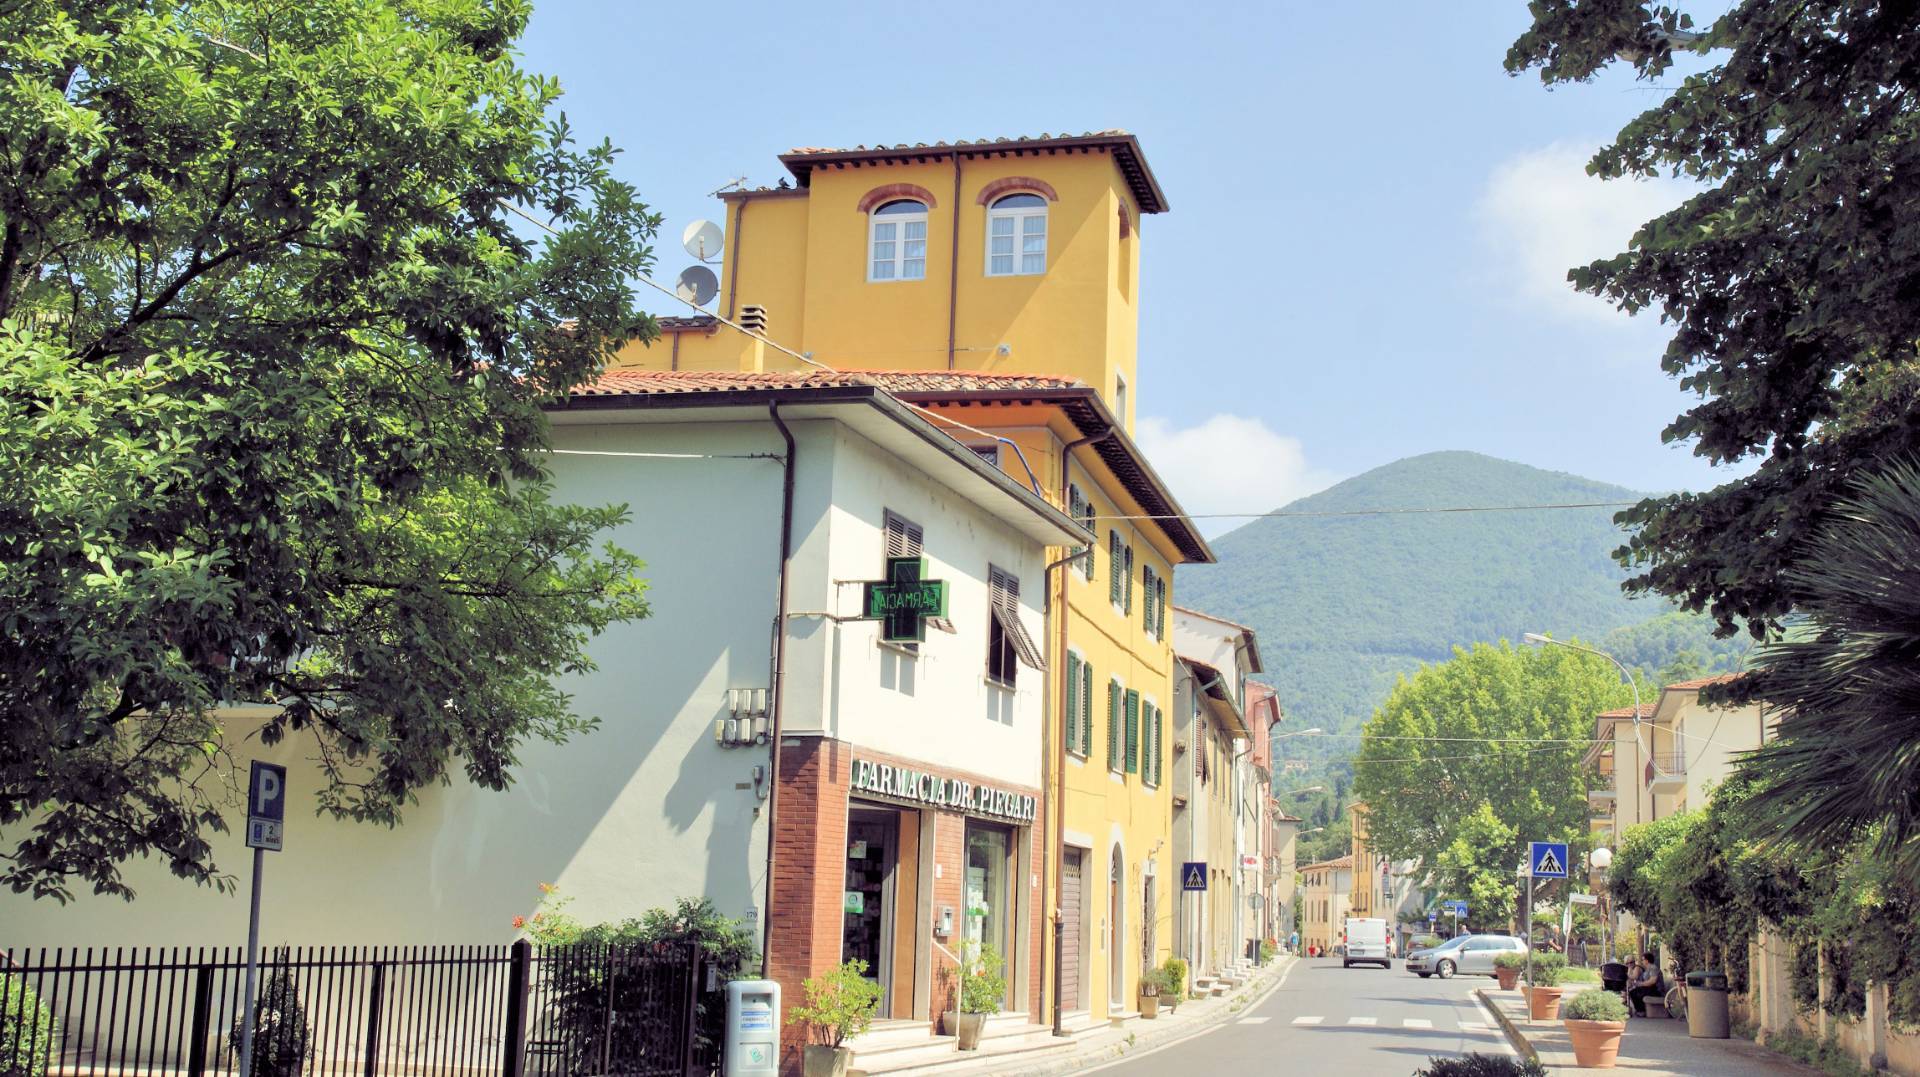 Attivit commerciale in vendita, San Giuliano Terme molina di quosa